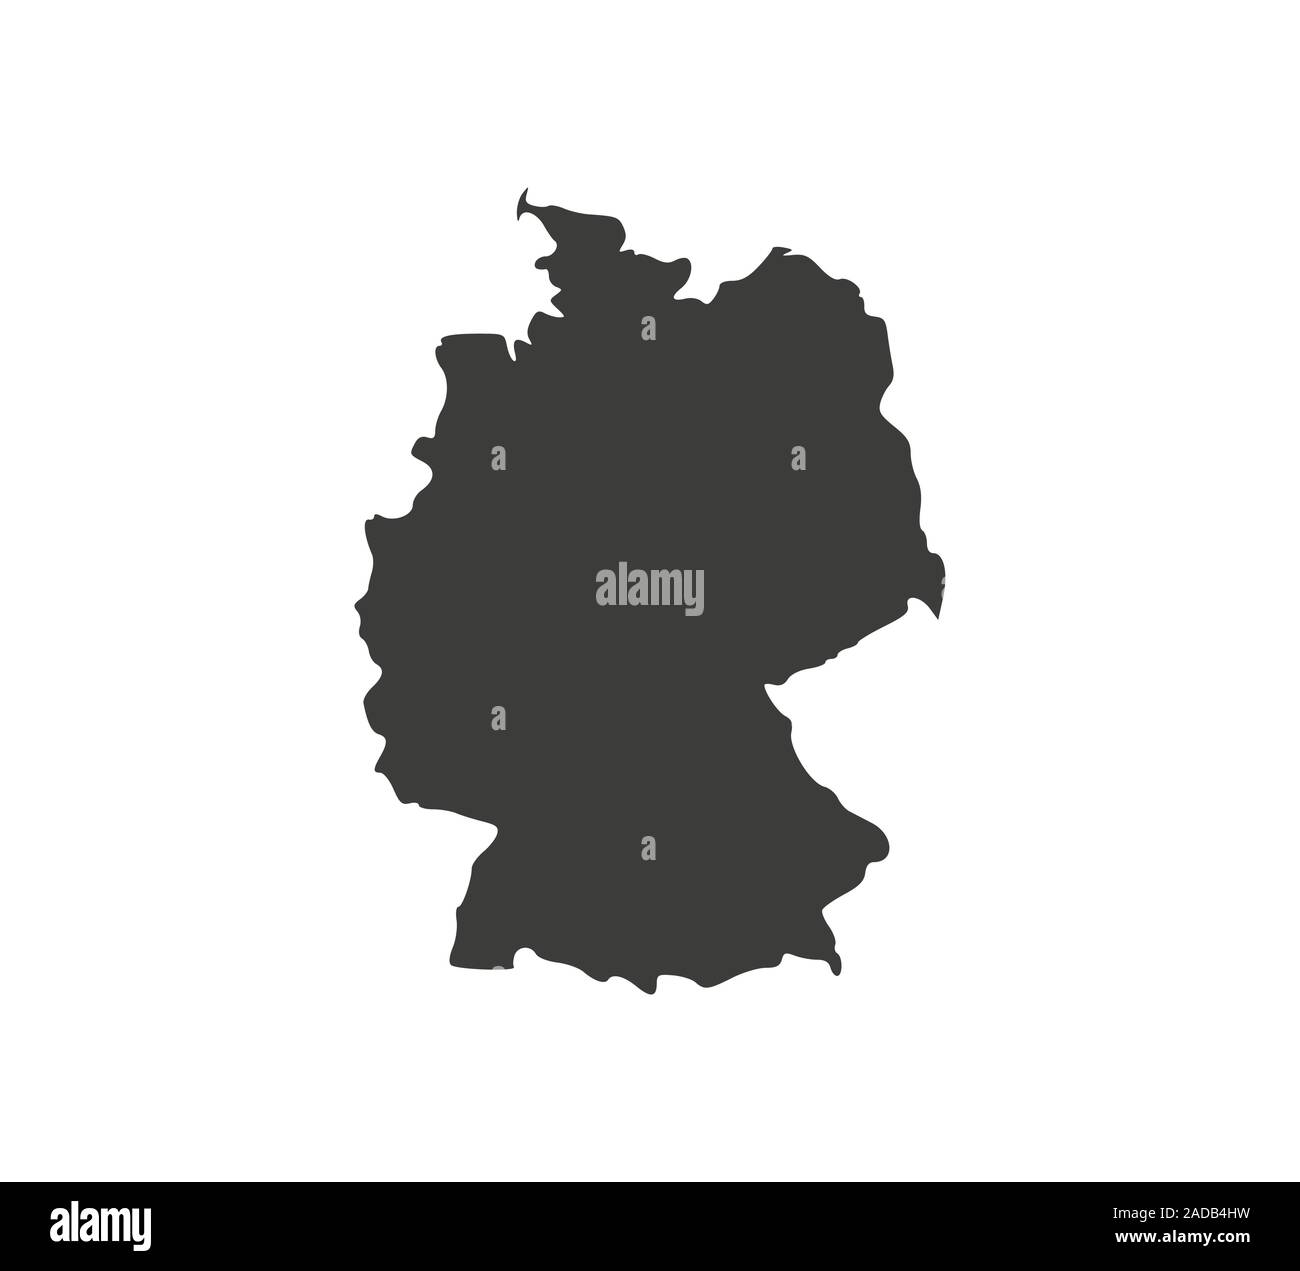 Alemania mapa sobre fondo blanco. Ilustración vectorial. Ilustración del Vector